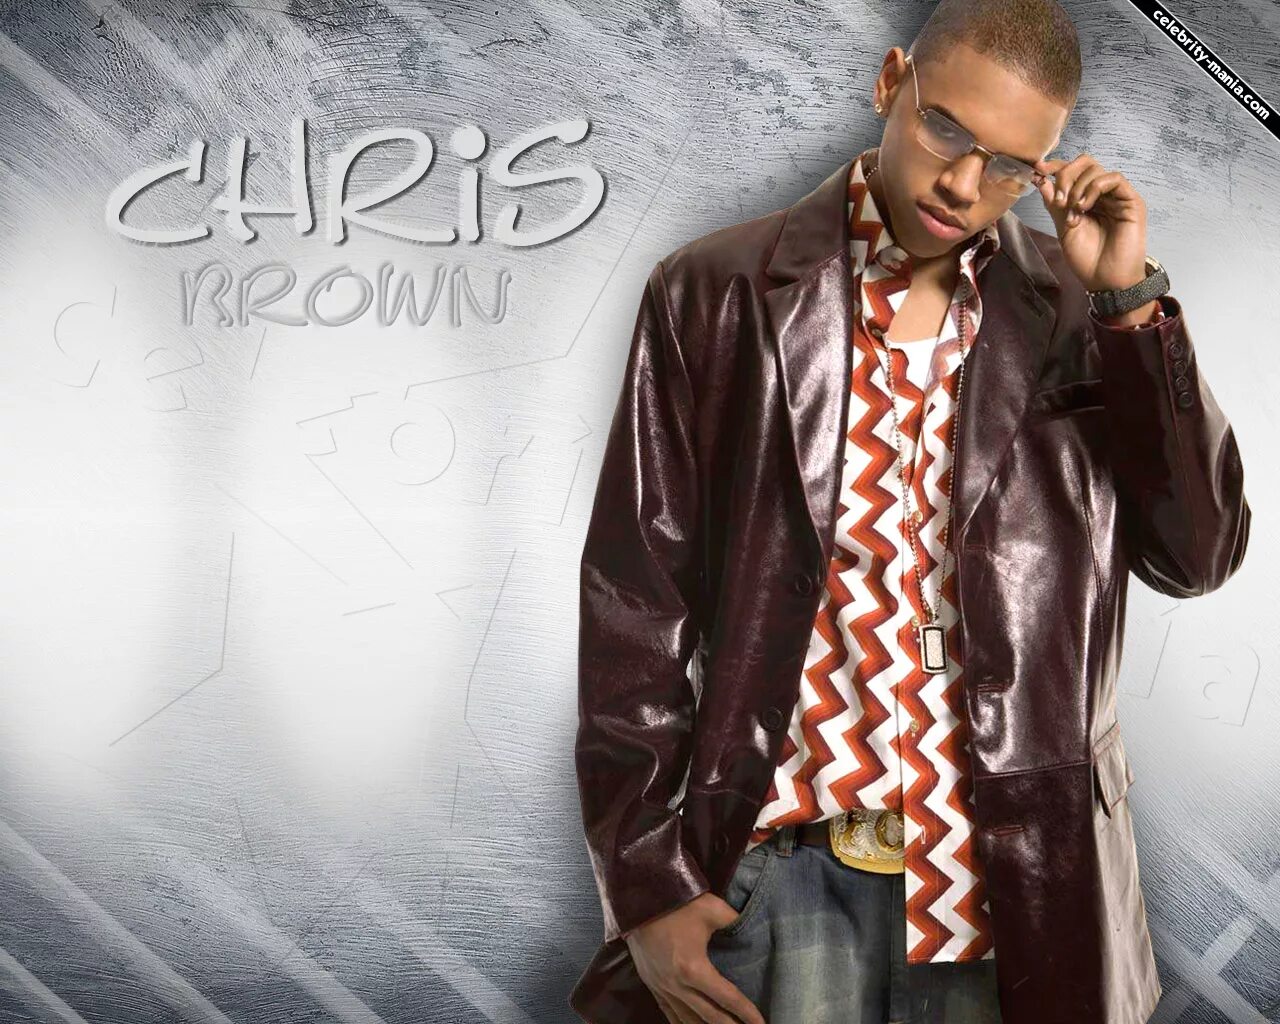 Chris Brown. Chris Brown album 2005. Chris Brown 2023.